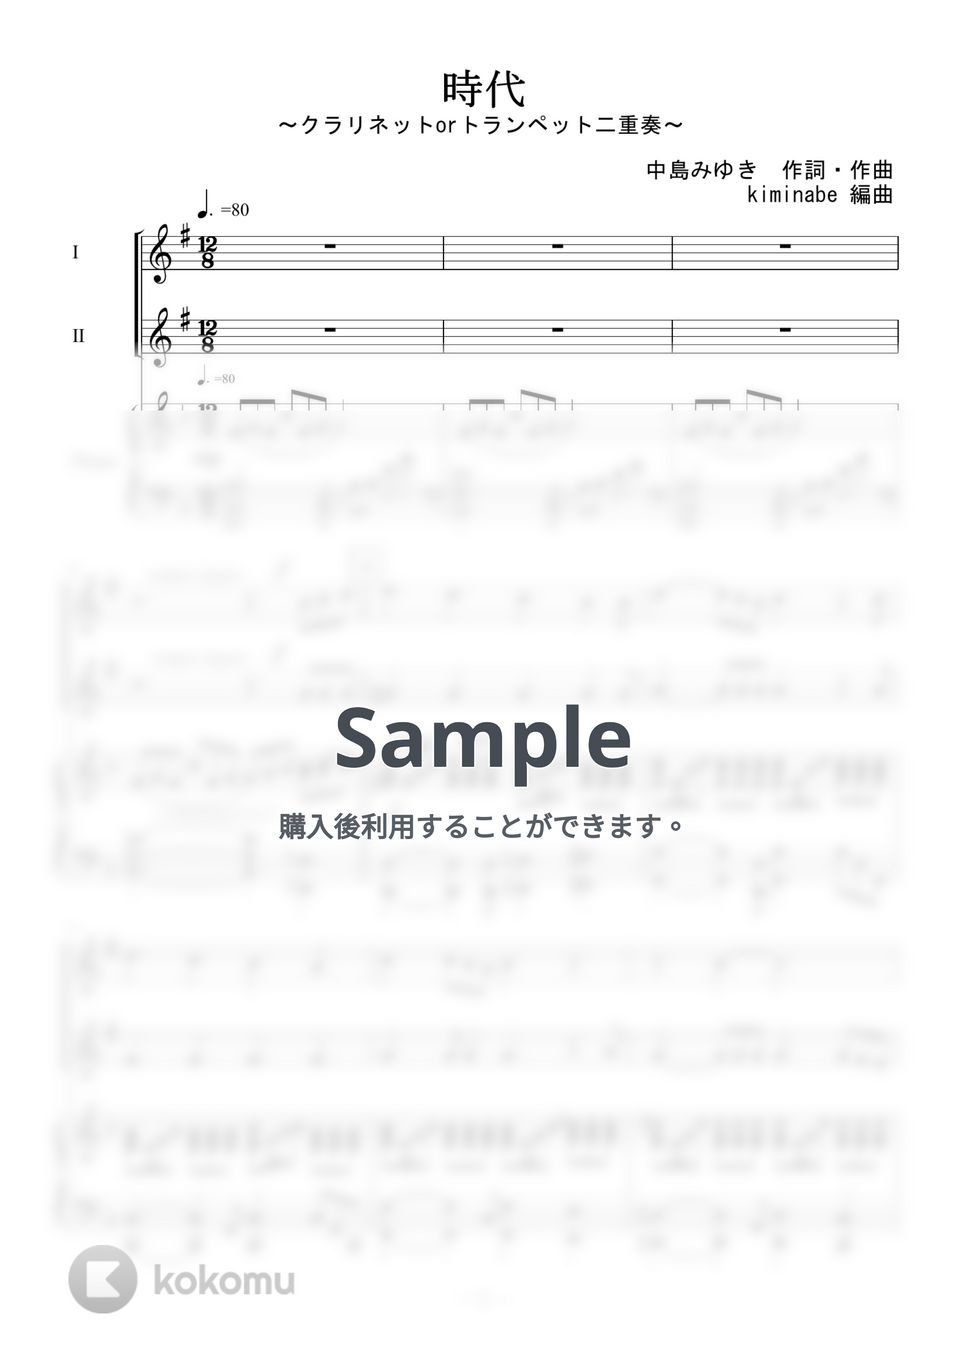 中島みゆき - 時代 (クラリネットorトランペット二重奏) by kiminabe